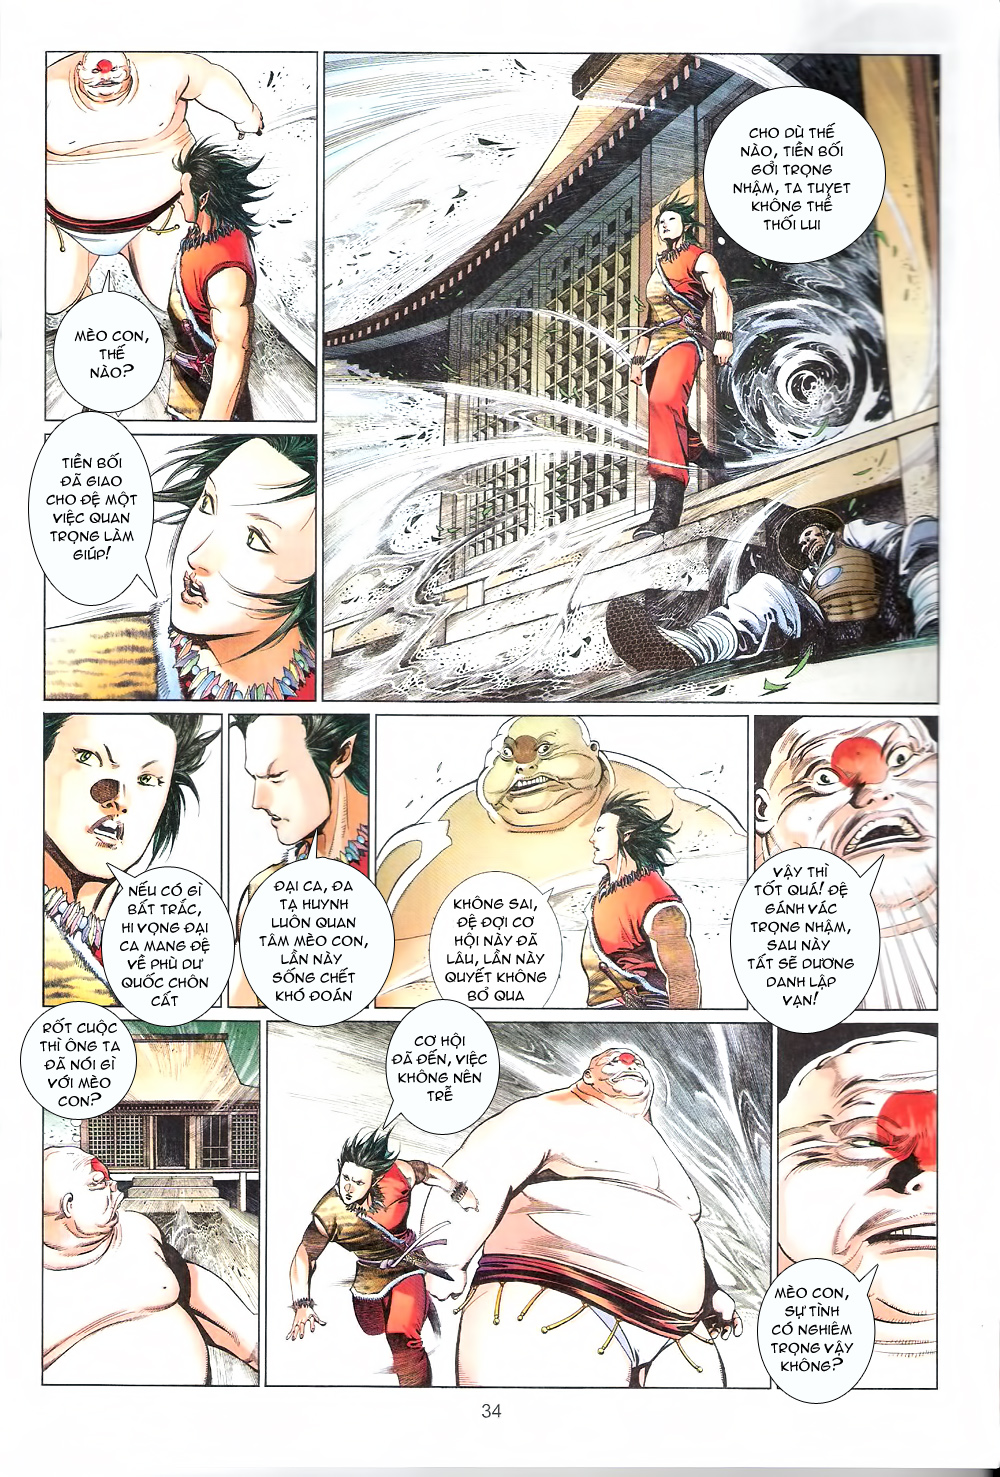 Phong Vân chap 552 trang 34